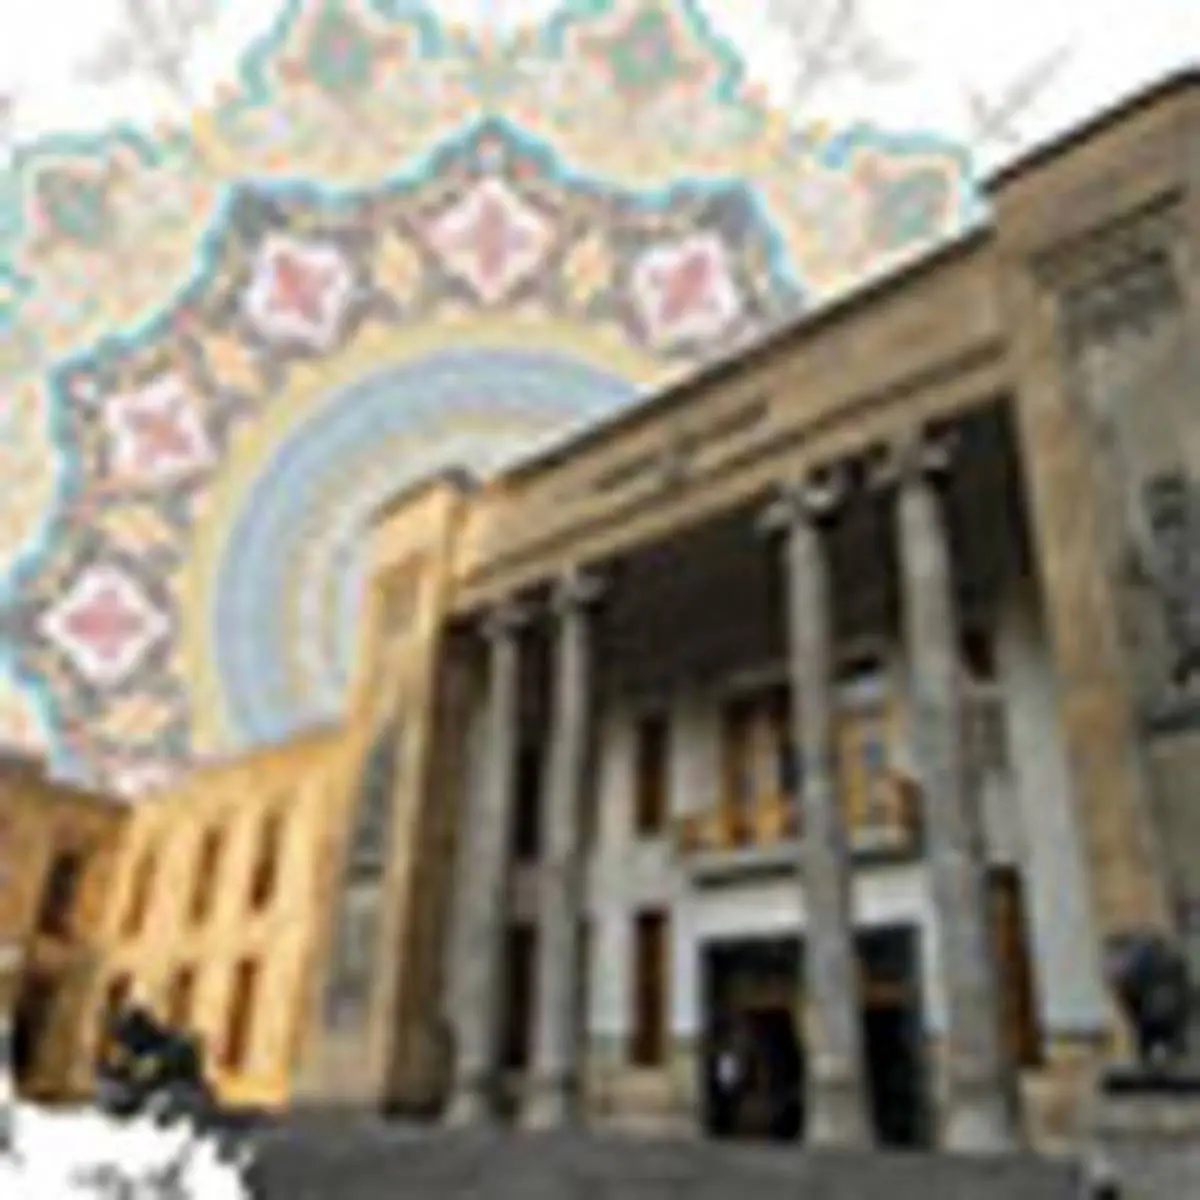 تمدید نمایشگاه مشترک موزه بانک ملی ایران و بانک مرکزی و سفارت الجزایر